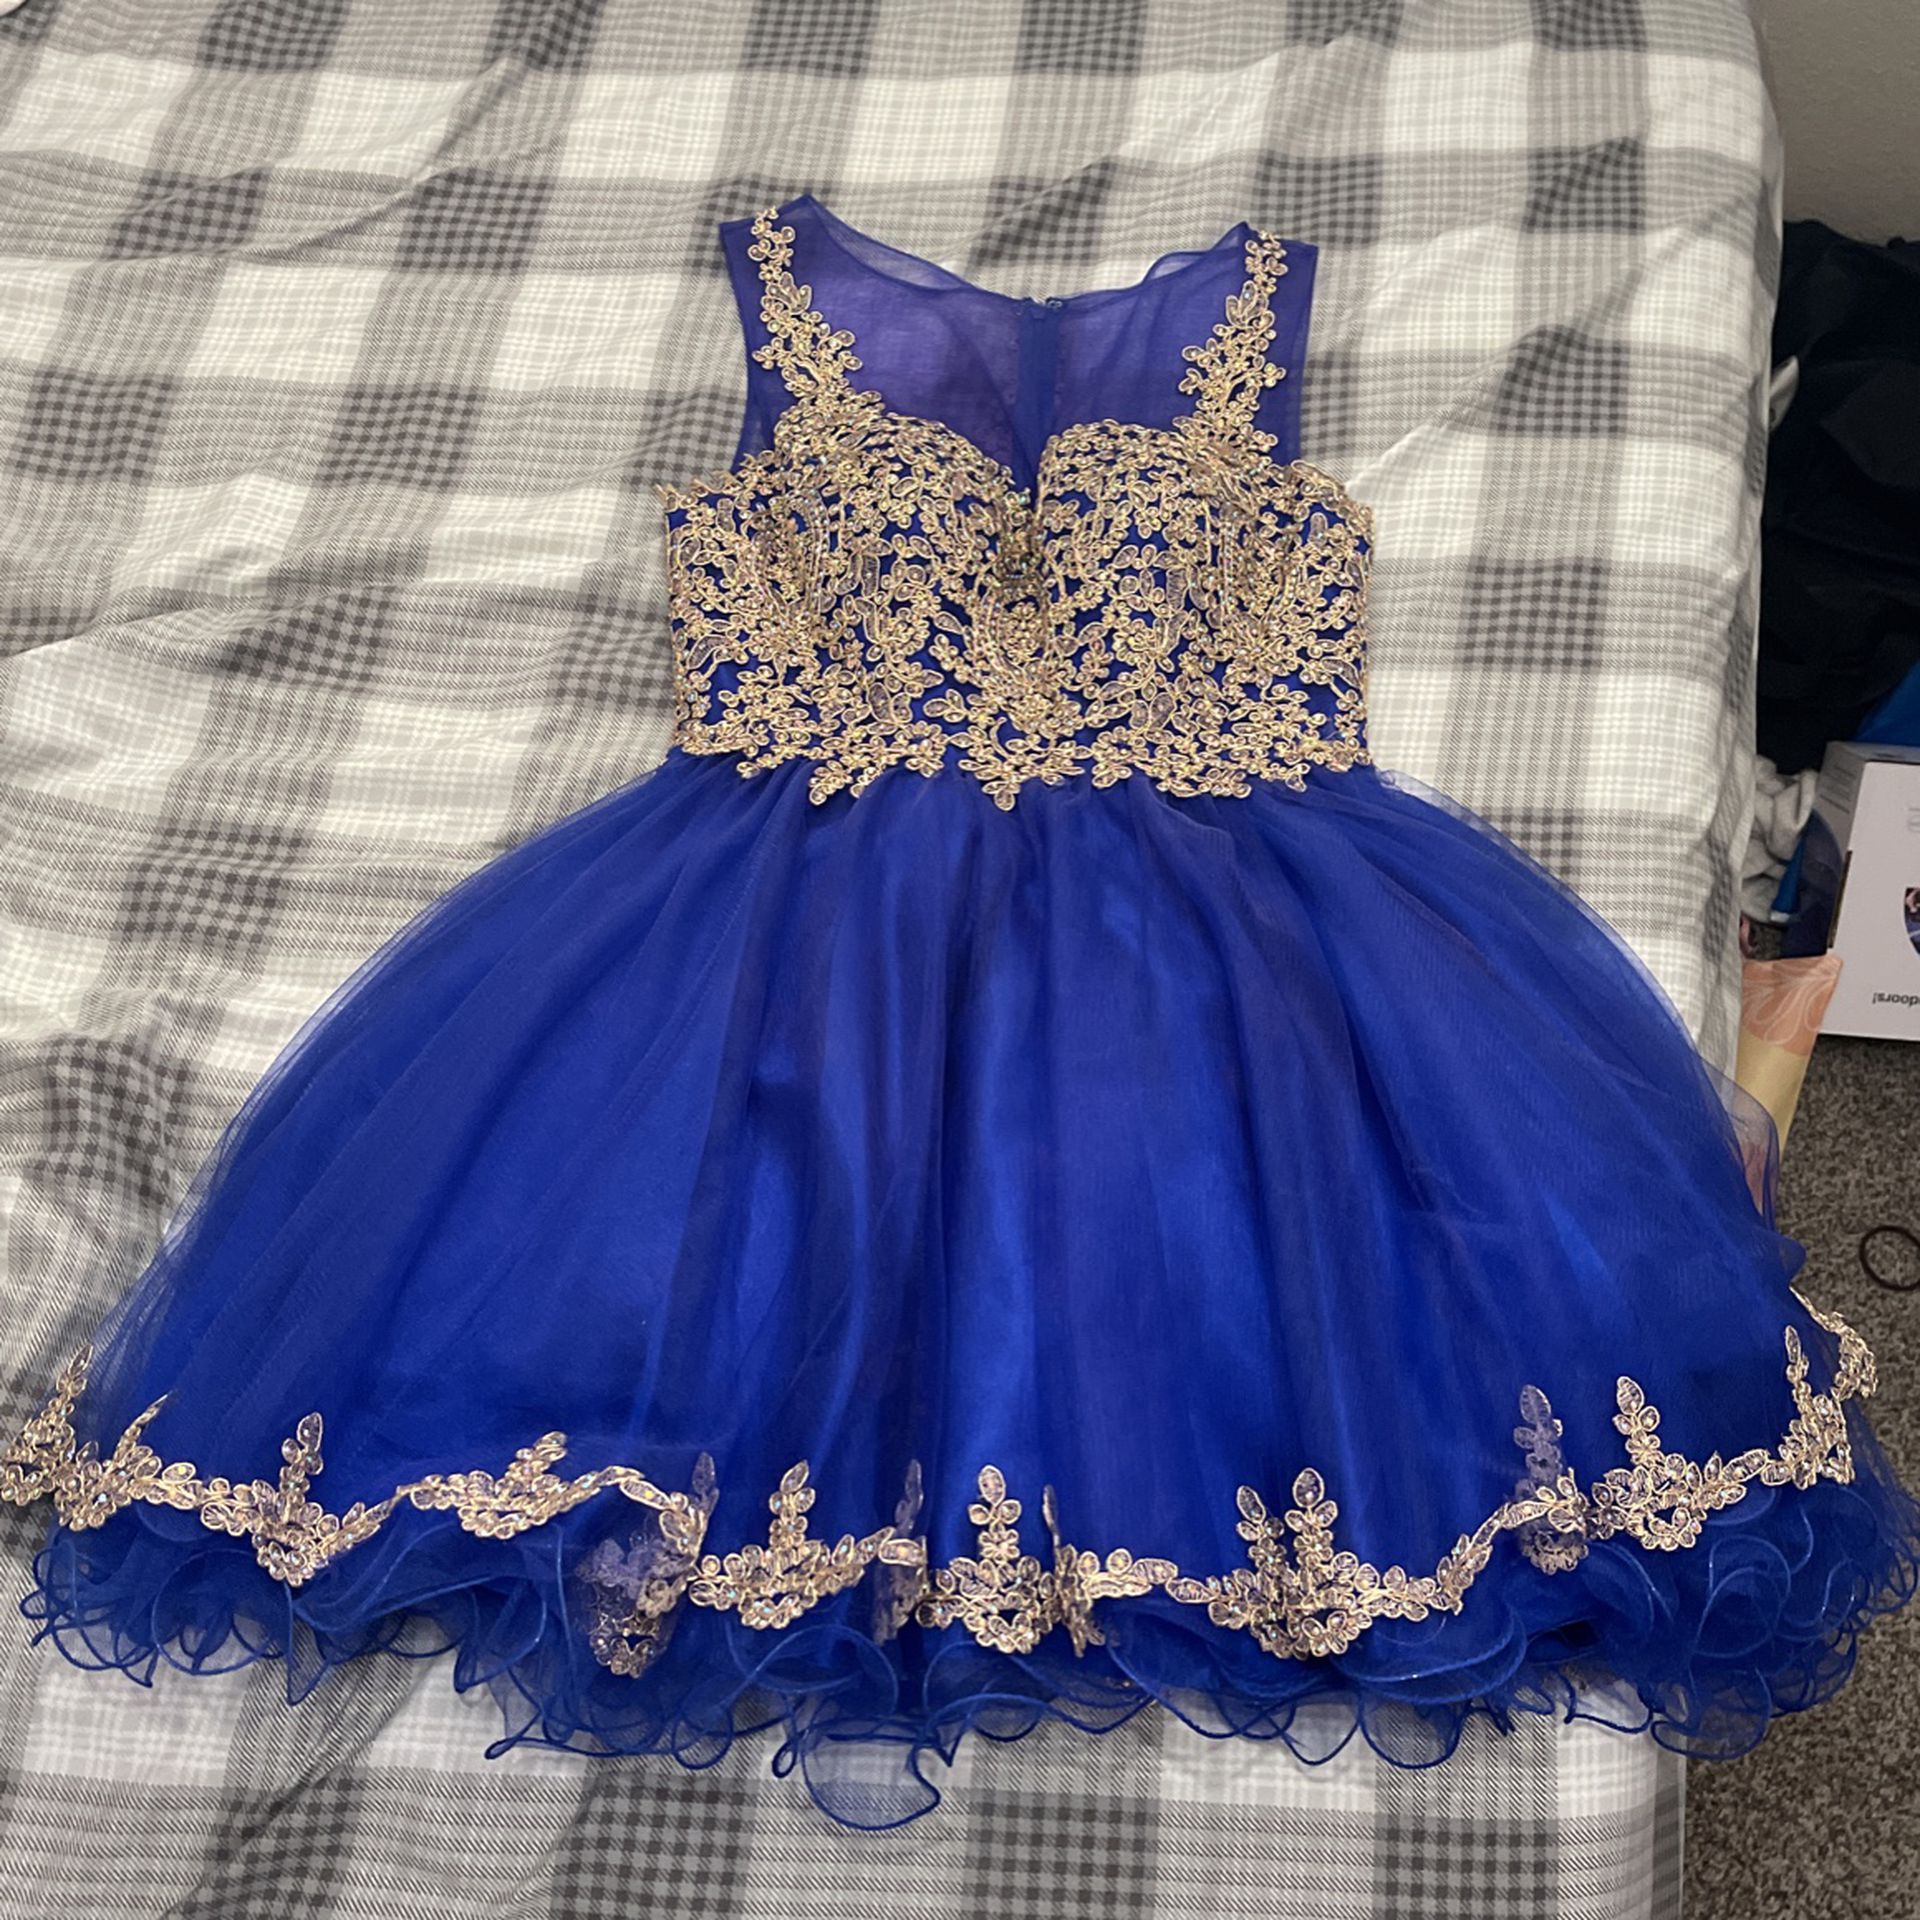 Royal Blue Dress Size S/M